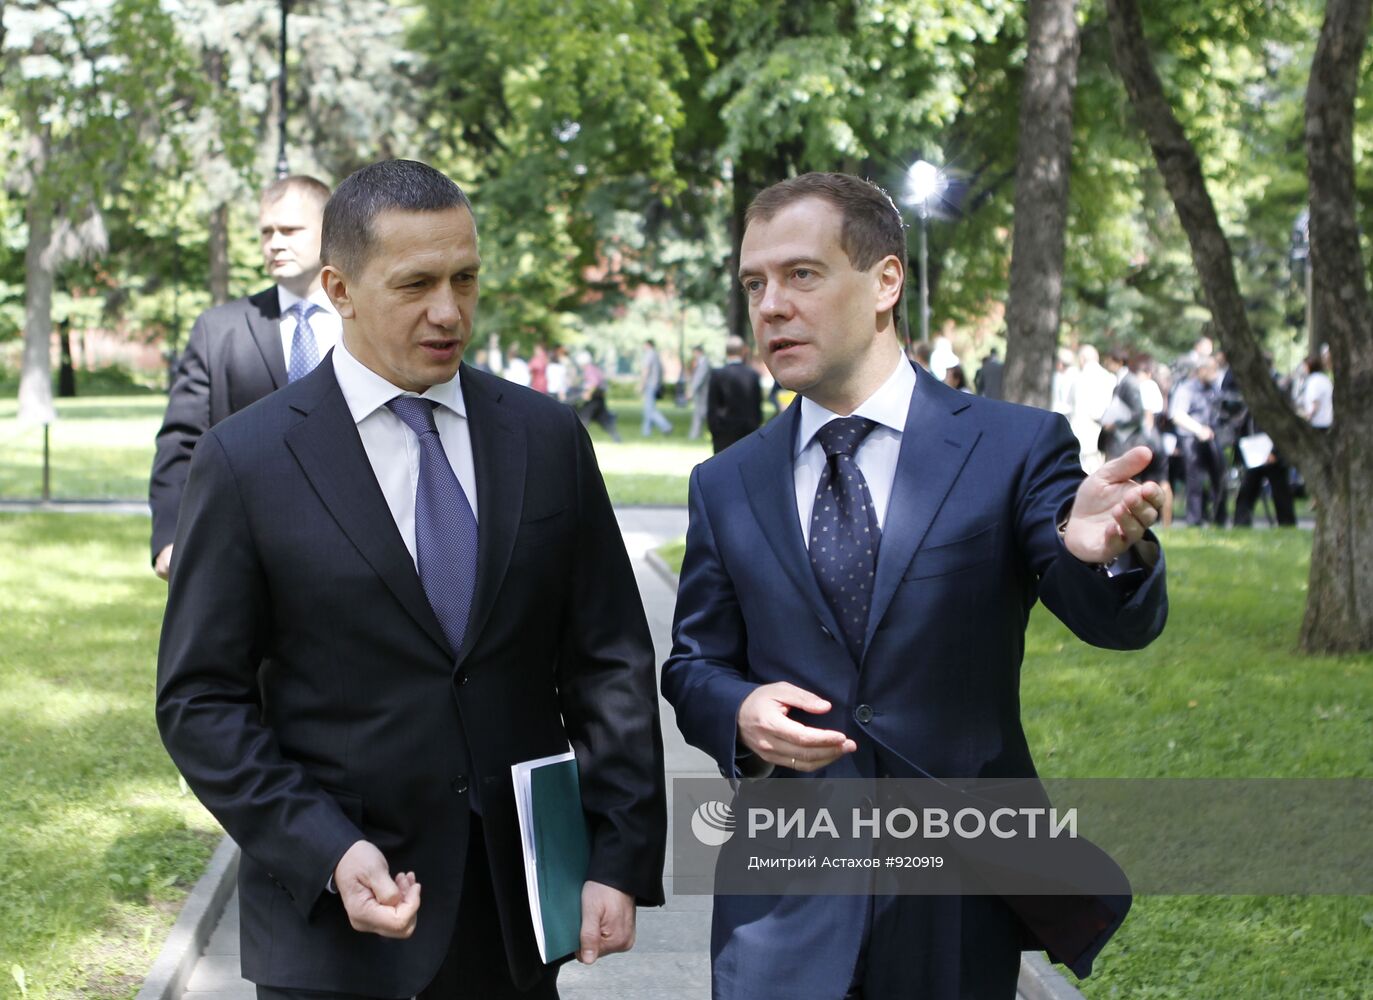 Д.Медведев встретился в Кремле с экологами